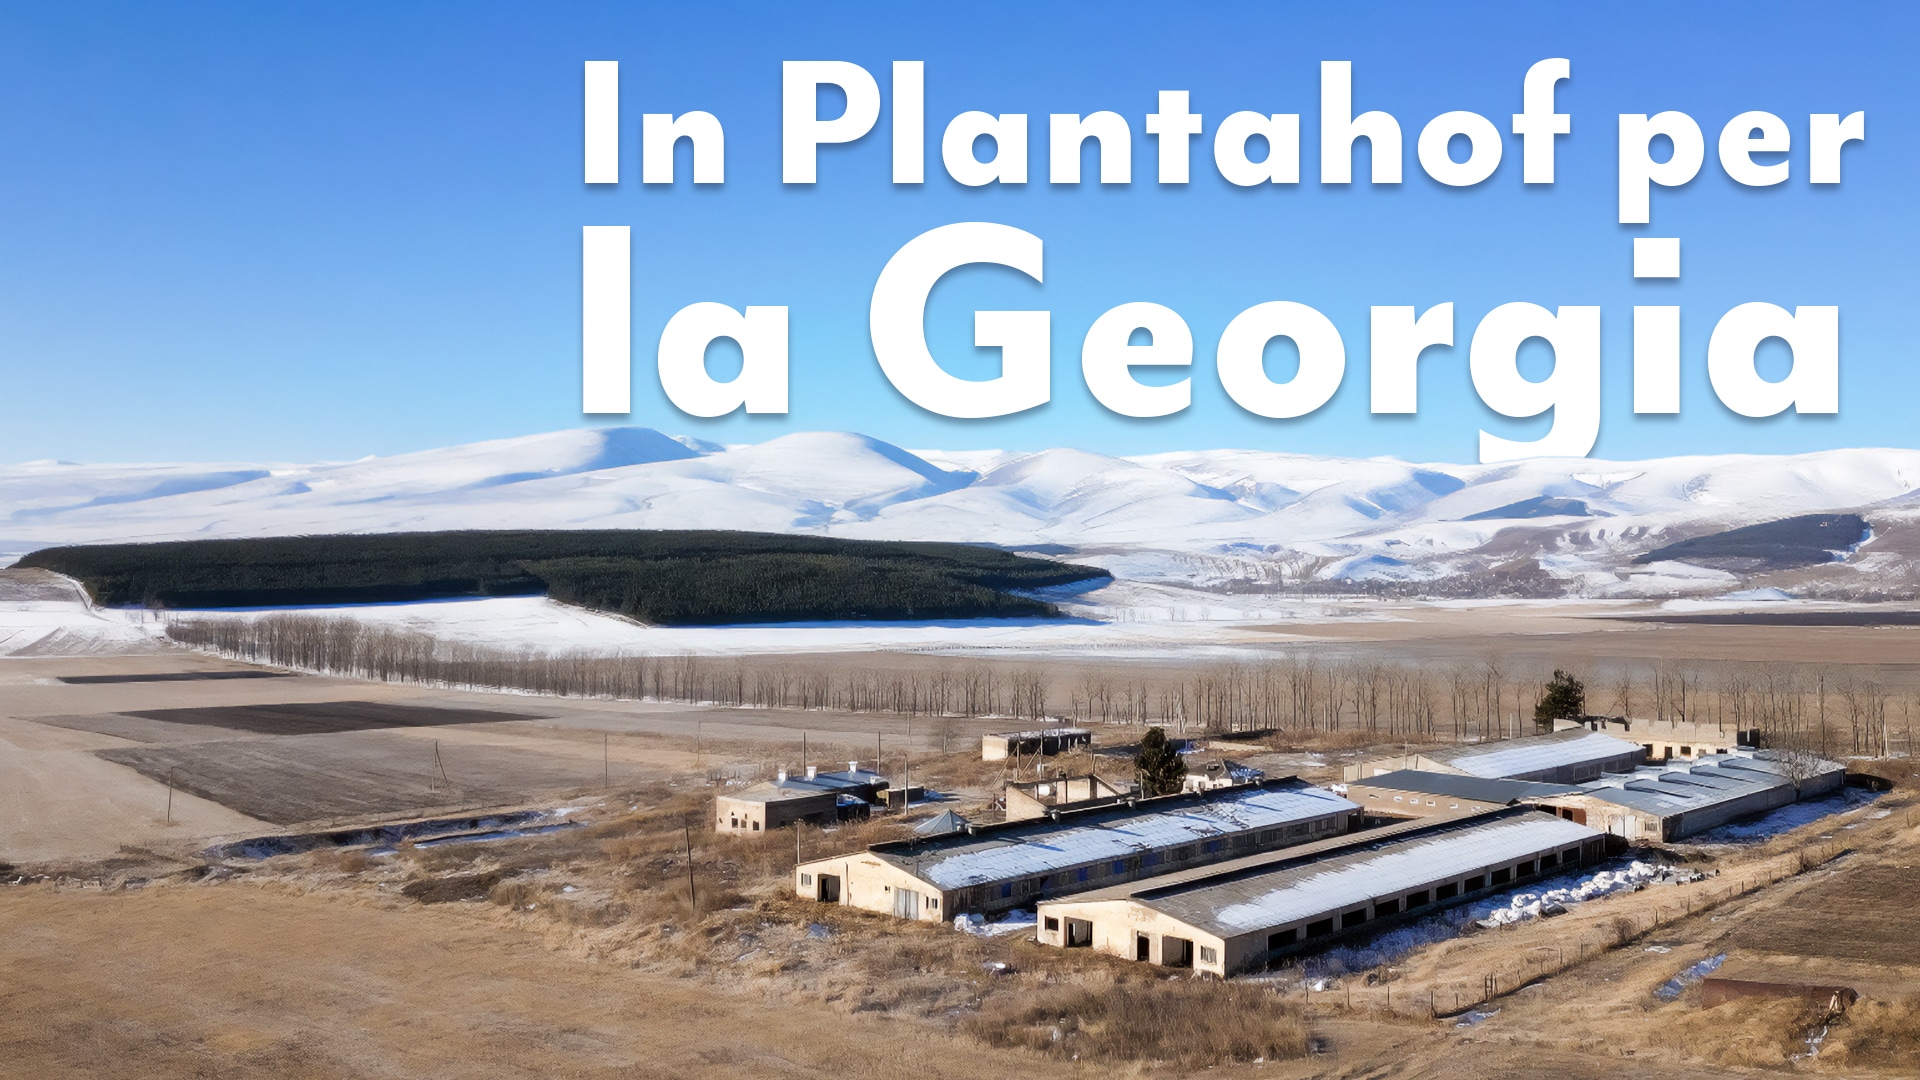 In Plantahof per la Georgia